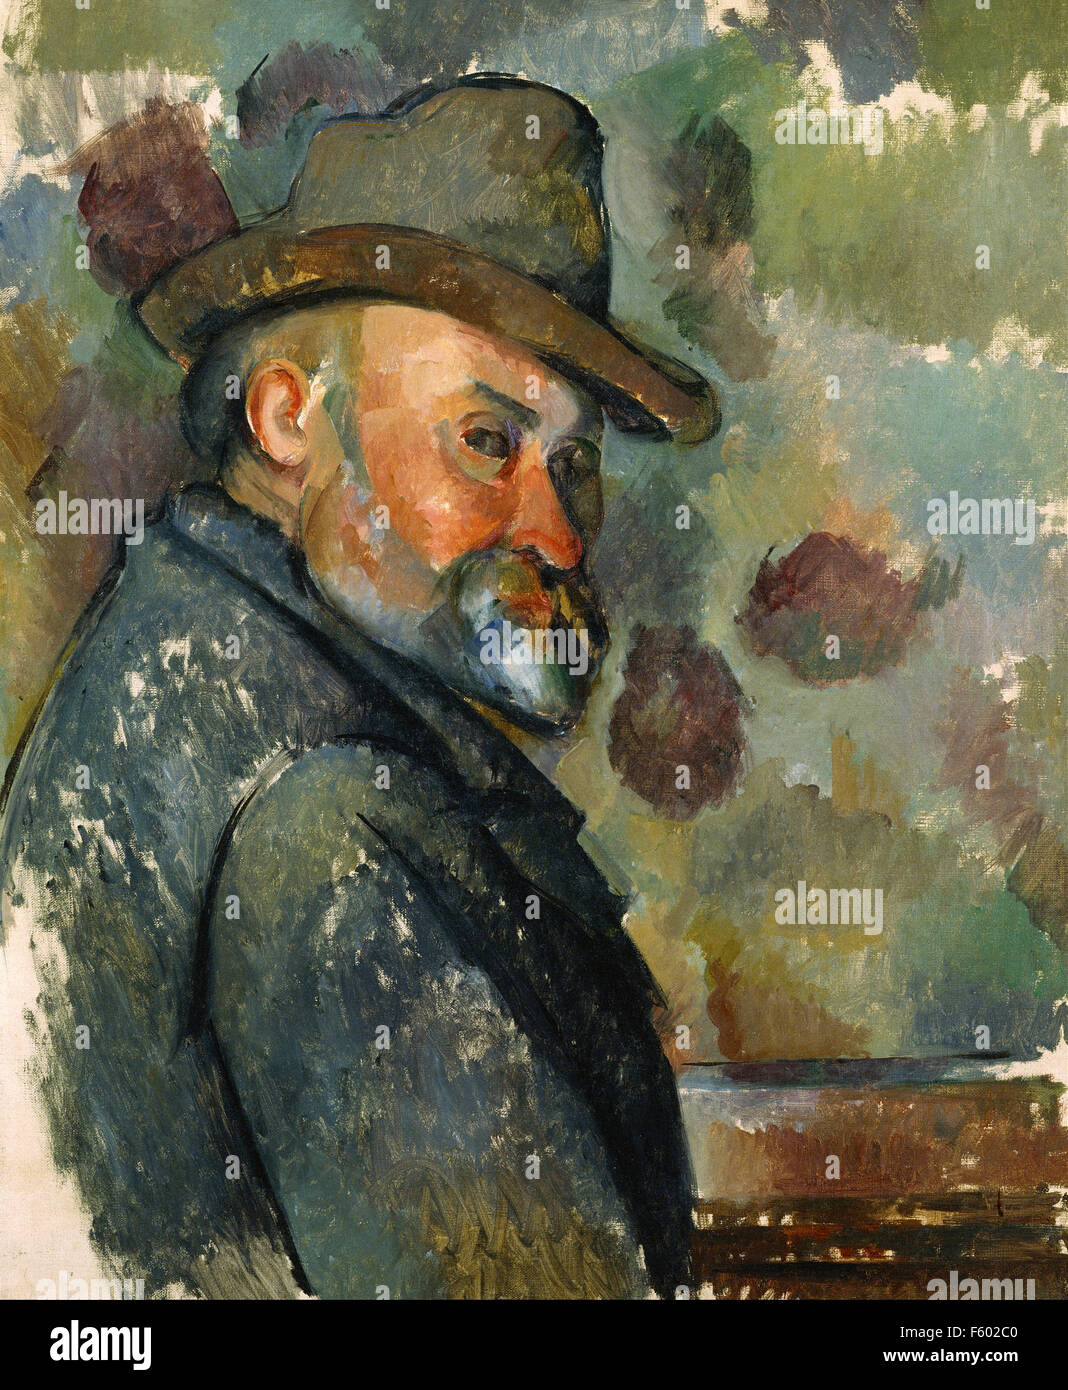 Paul Cézanne - Self Portrait with a Hat Stock Photo